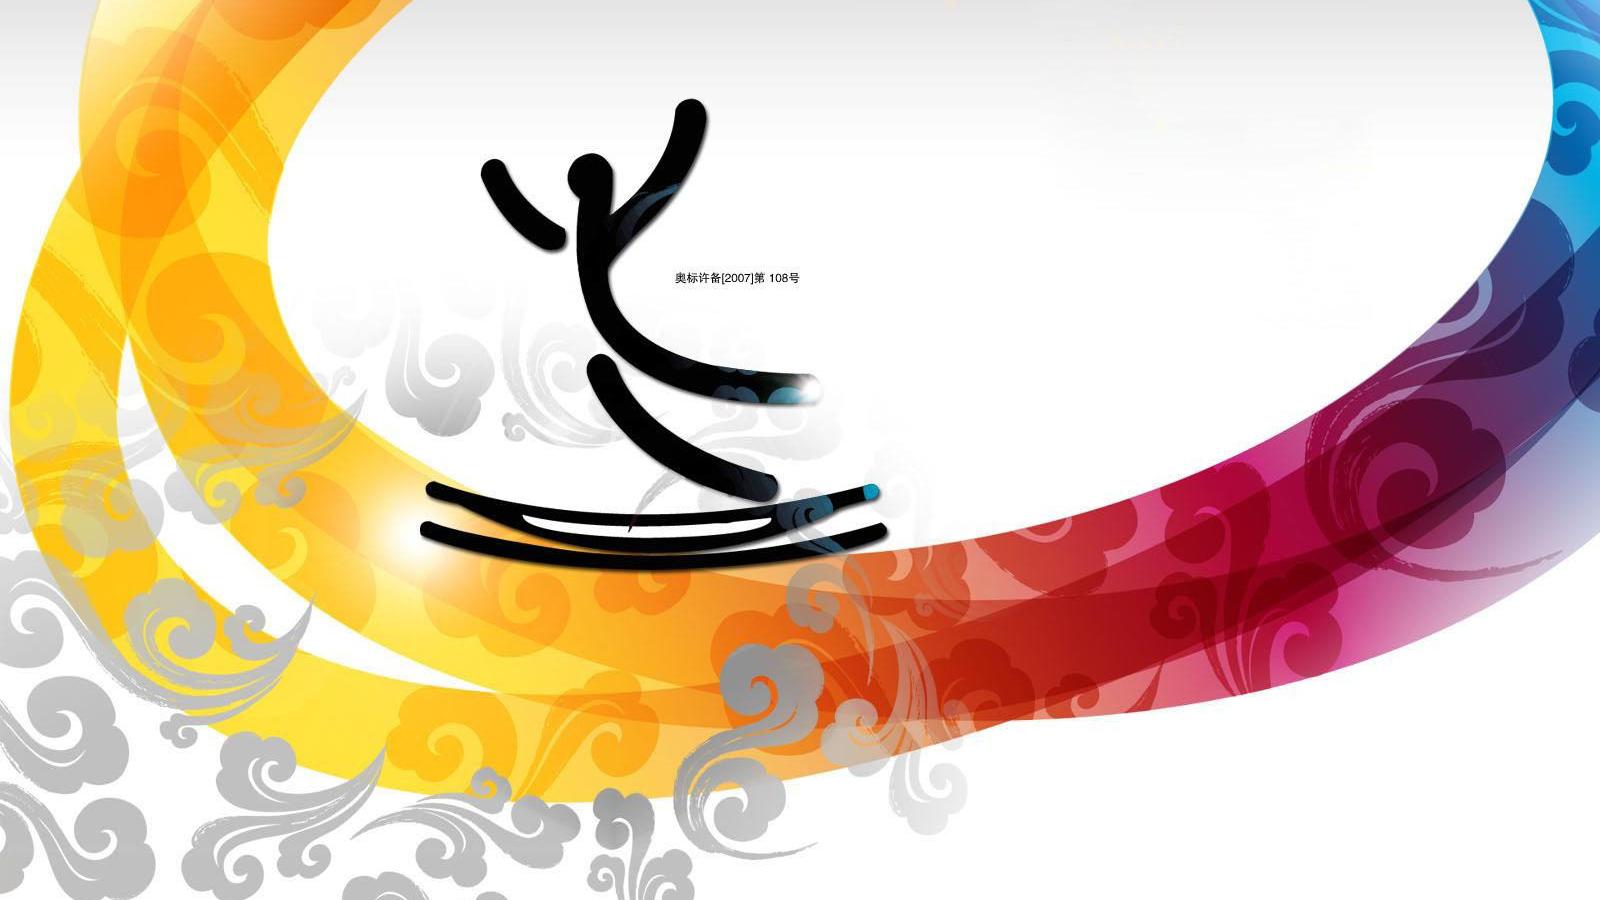 Download Wallpaper 2008 Summer Olympics (Beijing) (1600 x 900 ...